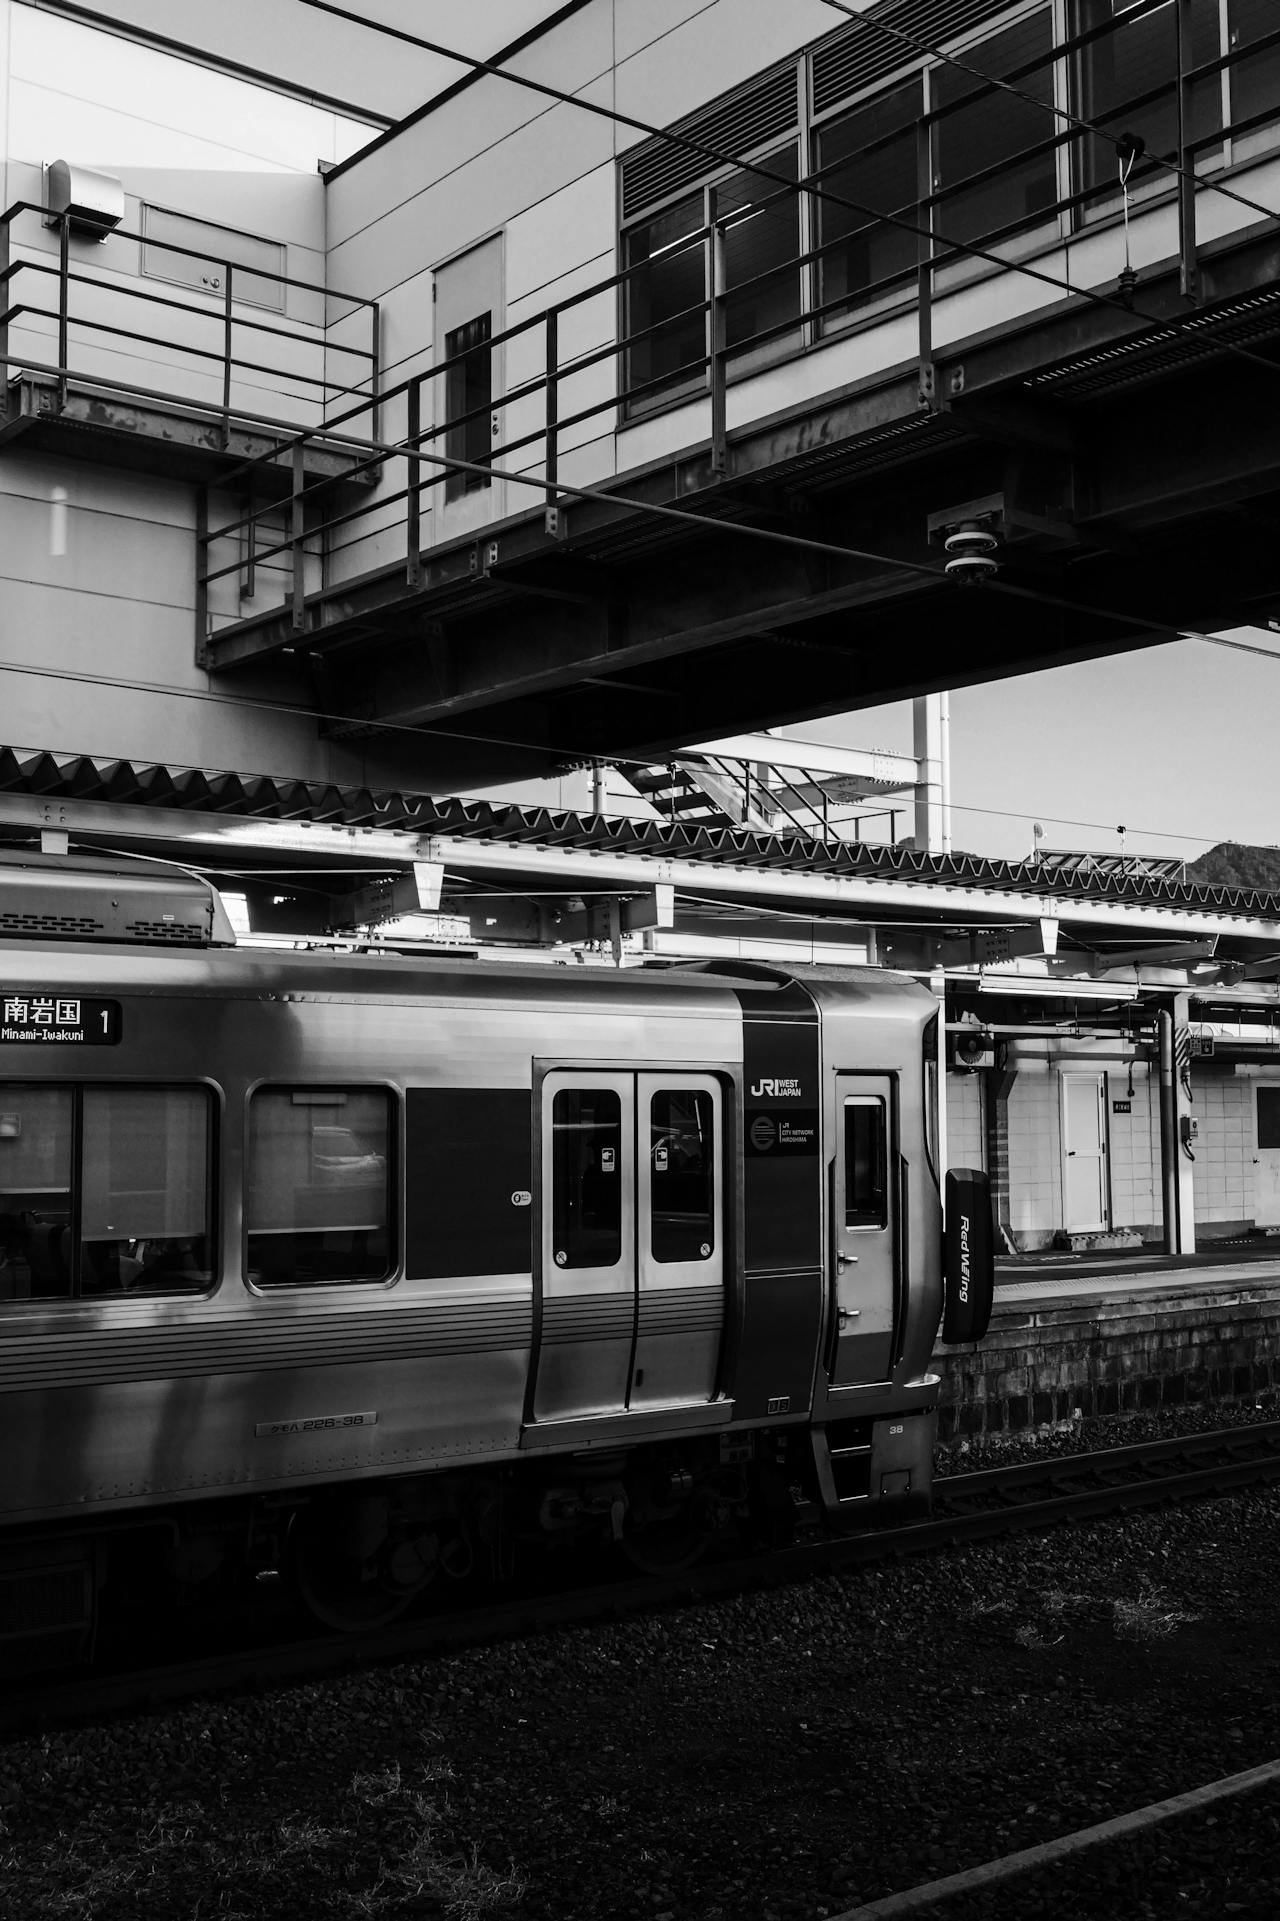 Train parked at Hiroshima Station